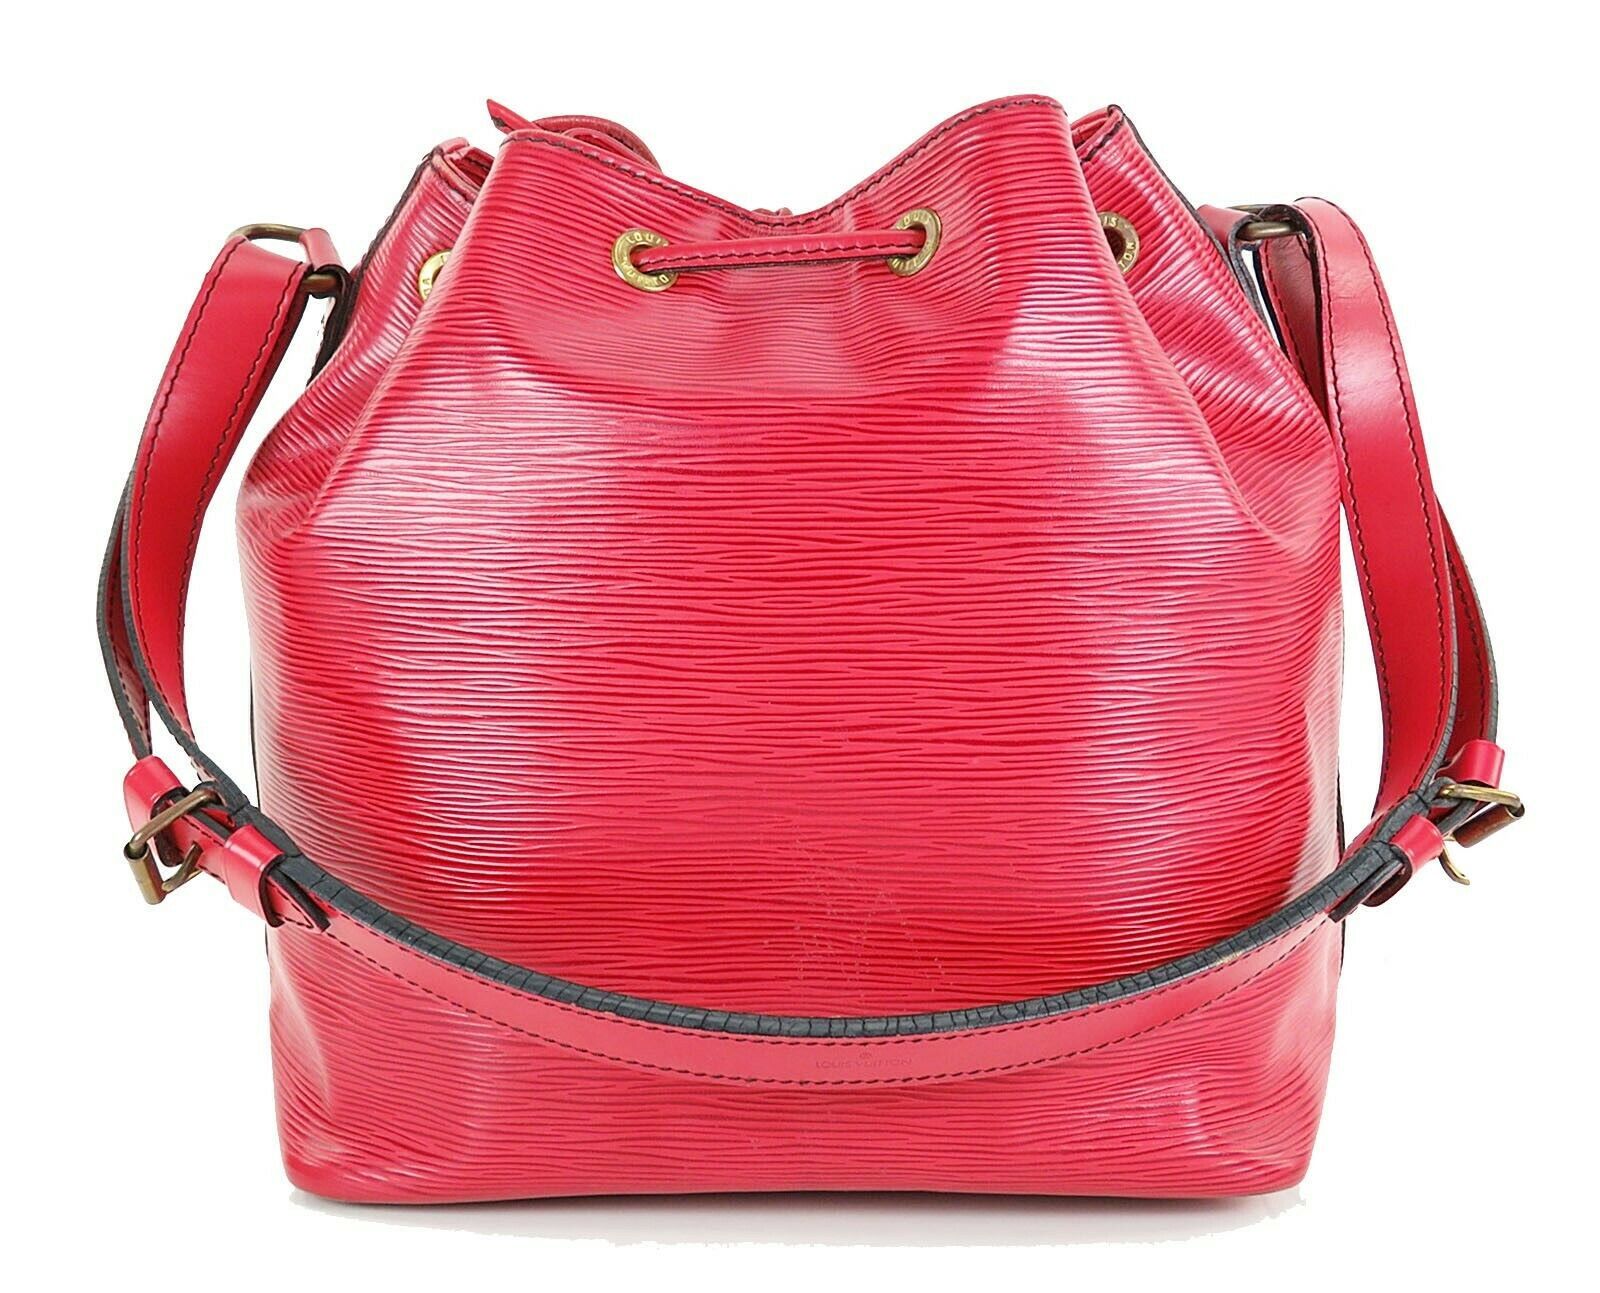 Auth LOUIS VUITTON Petit Noe Red Epi Leather Shoulder Tote Bag Purse #25066D - Women&#39;s Bags ...